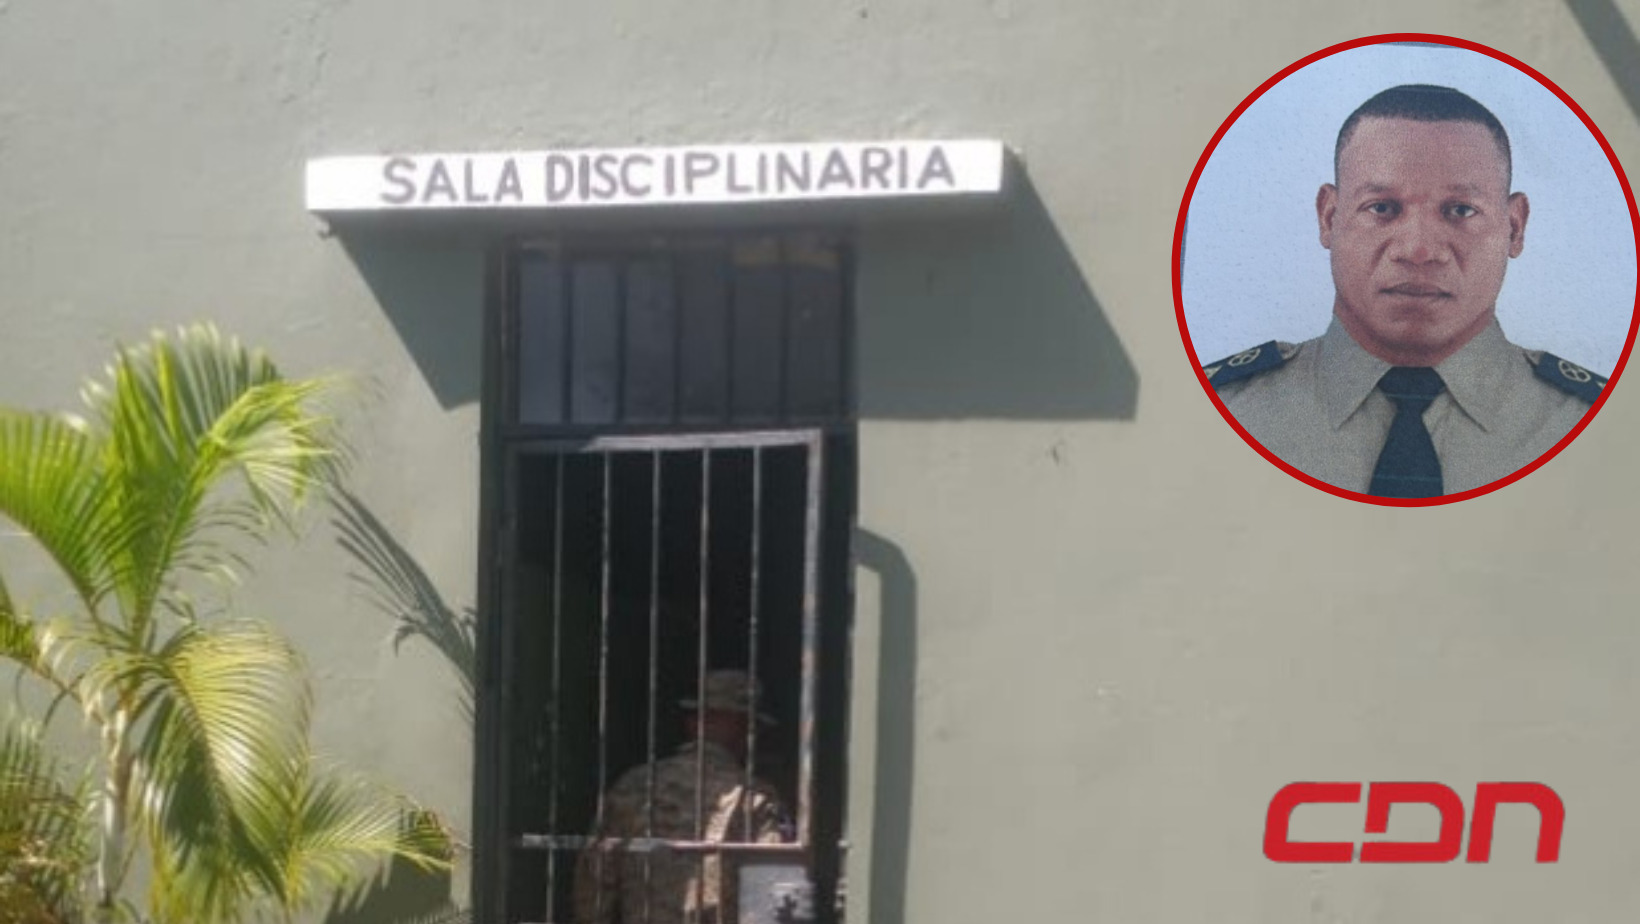 La persona herida y el agresor se disponían a salir para centros de votaciones en la provincia María Trinidad Sánchez, en las pasadas elecciones municipales